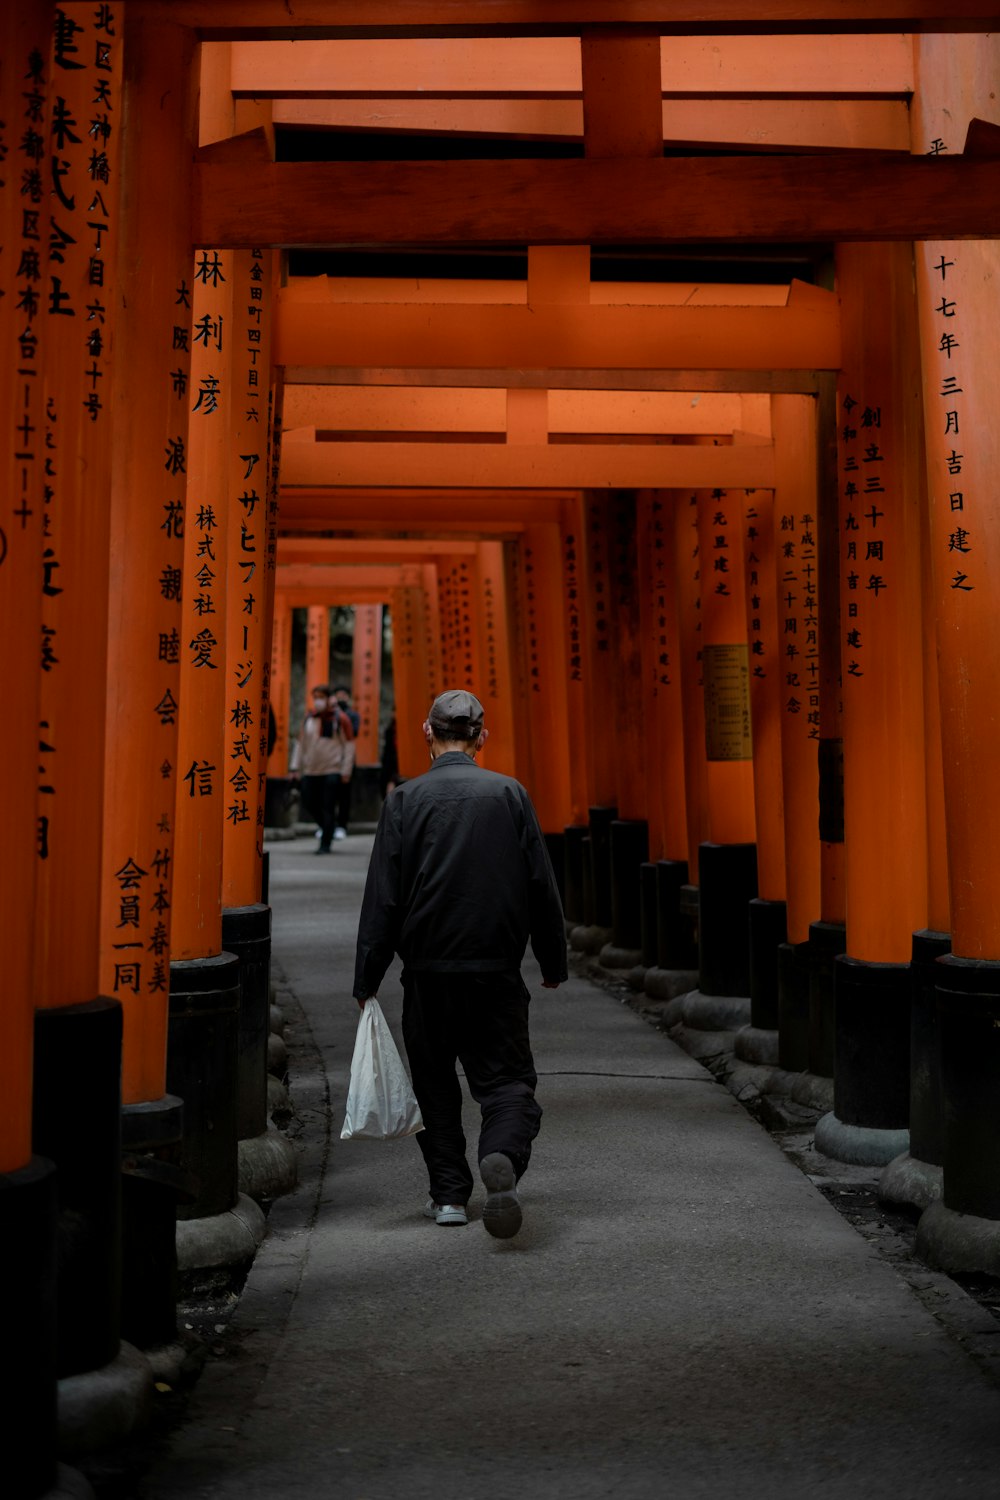 背の高いオレンジ色の柱の間の通路を歩いている男